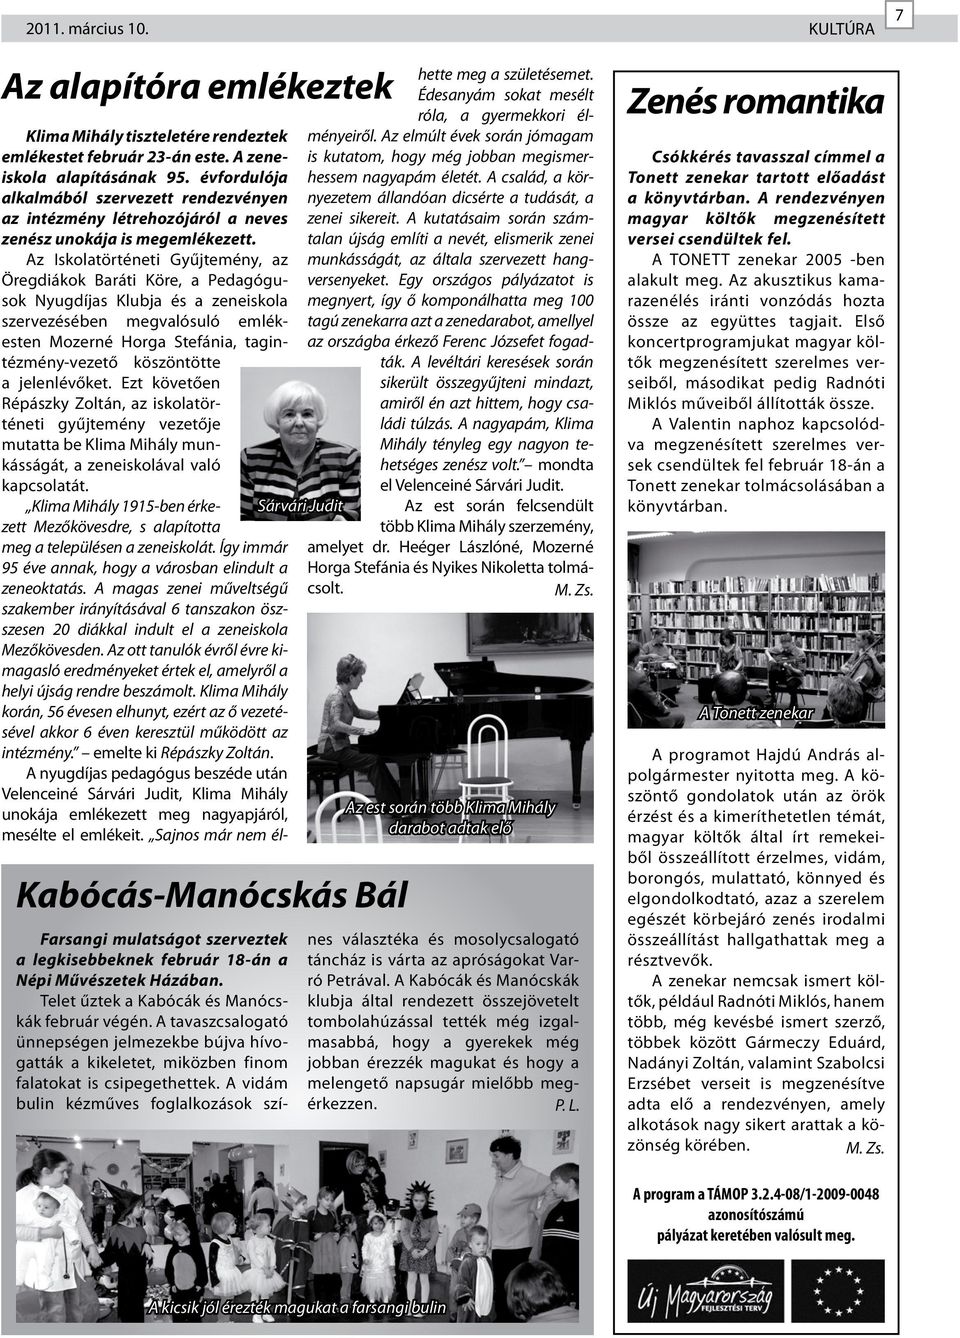 A vidám bulin kézműves foglalkozások szí- Sárvári Judit Klima Mihály tiszteletére rendeztek emlékestet február 23-án este. A zeneiskola alapításának 95.